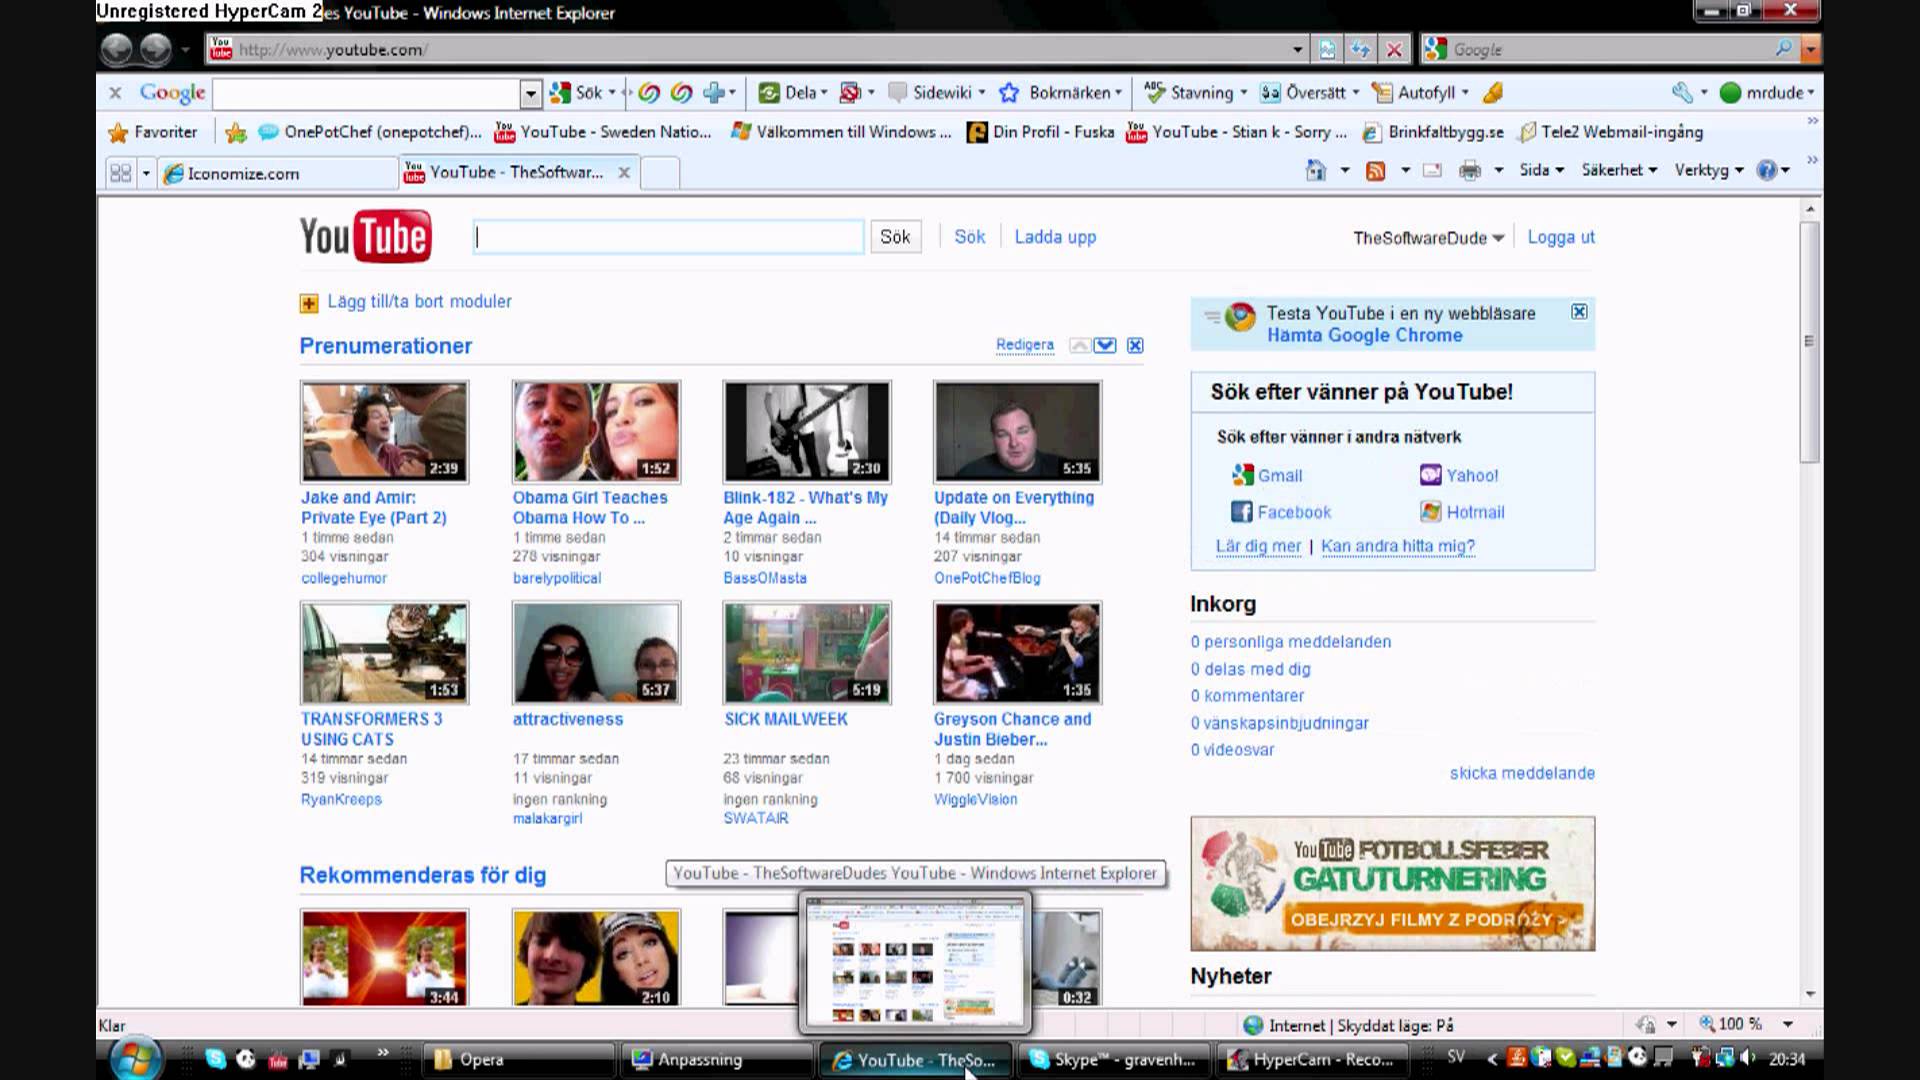 YouTube Desktop Icon